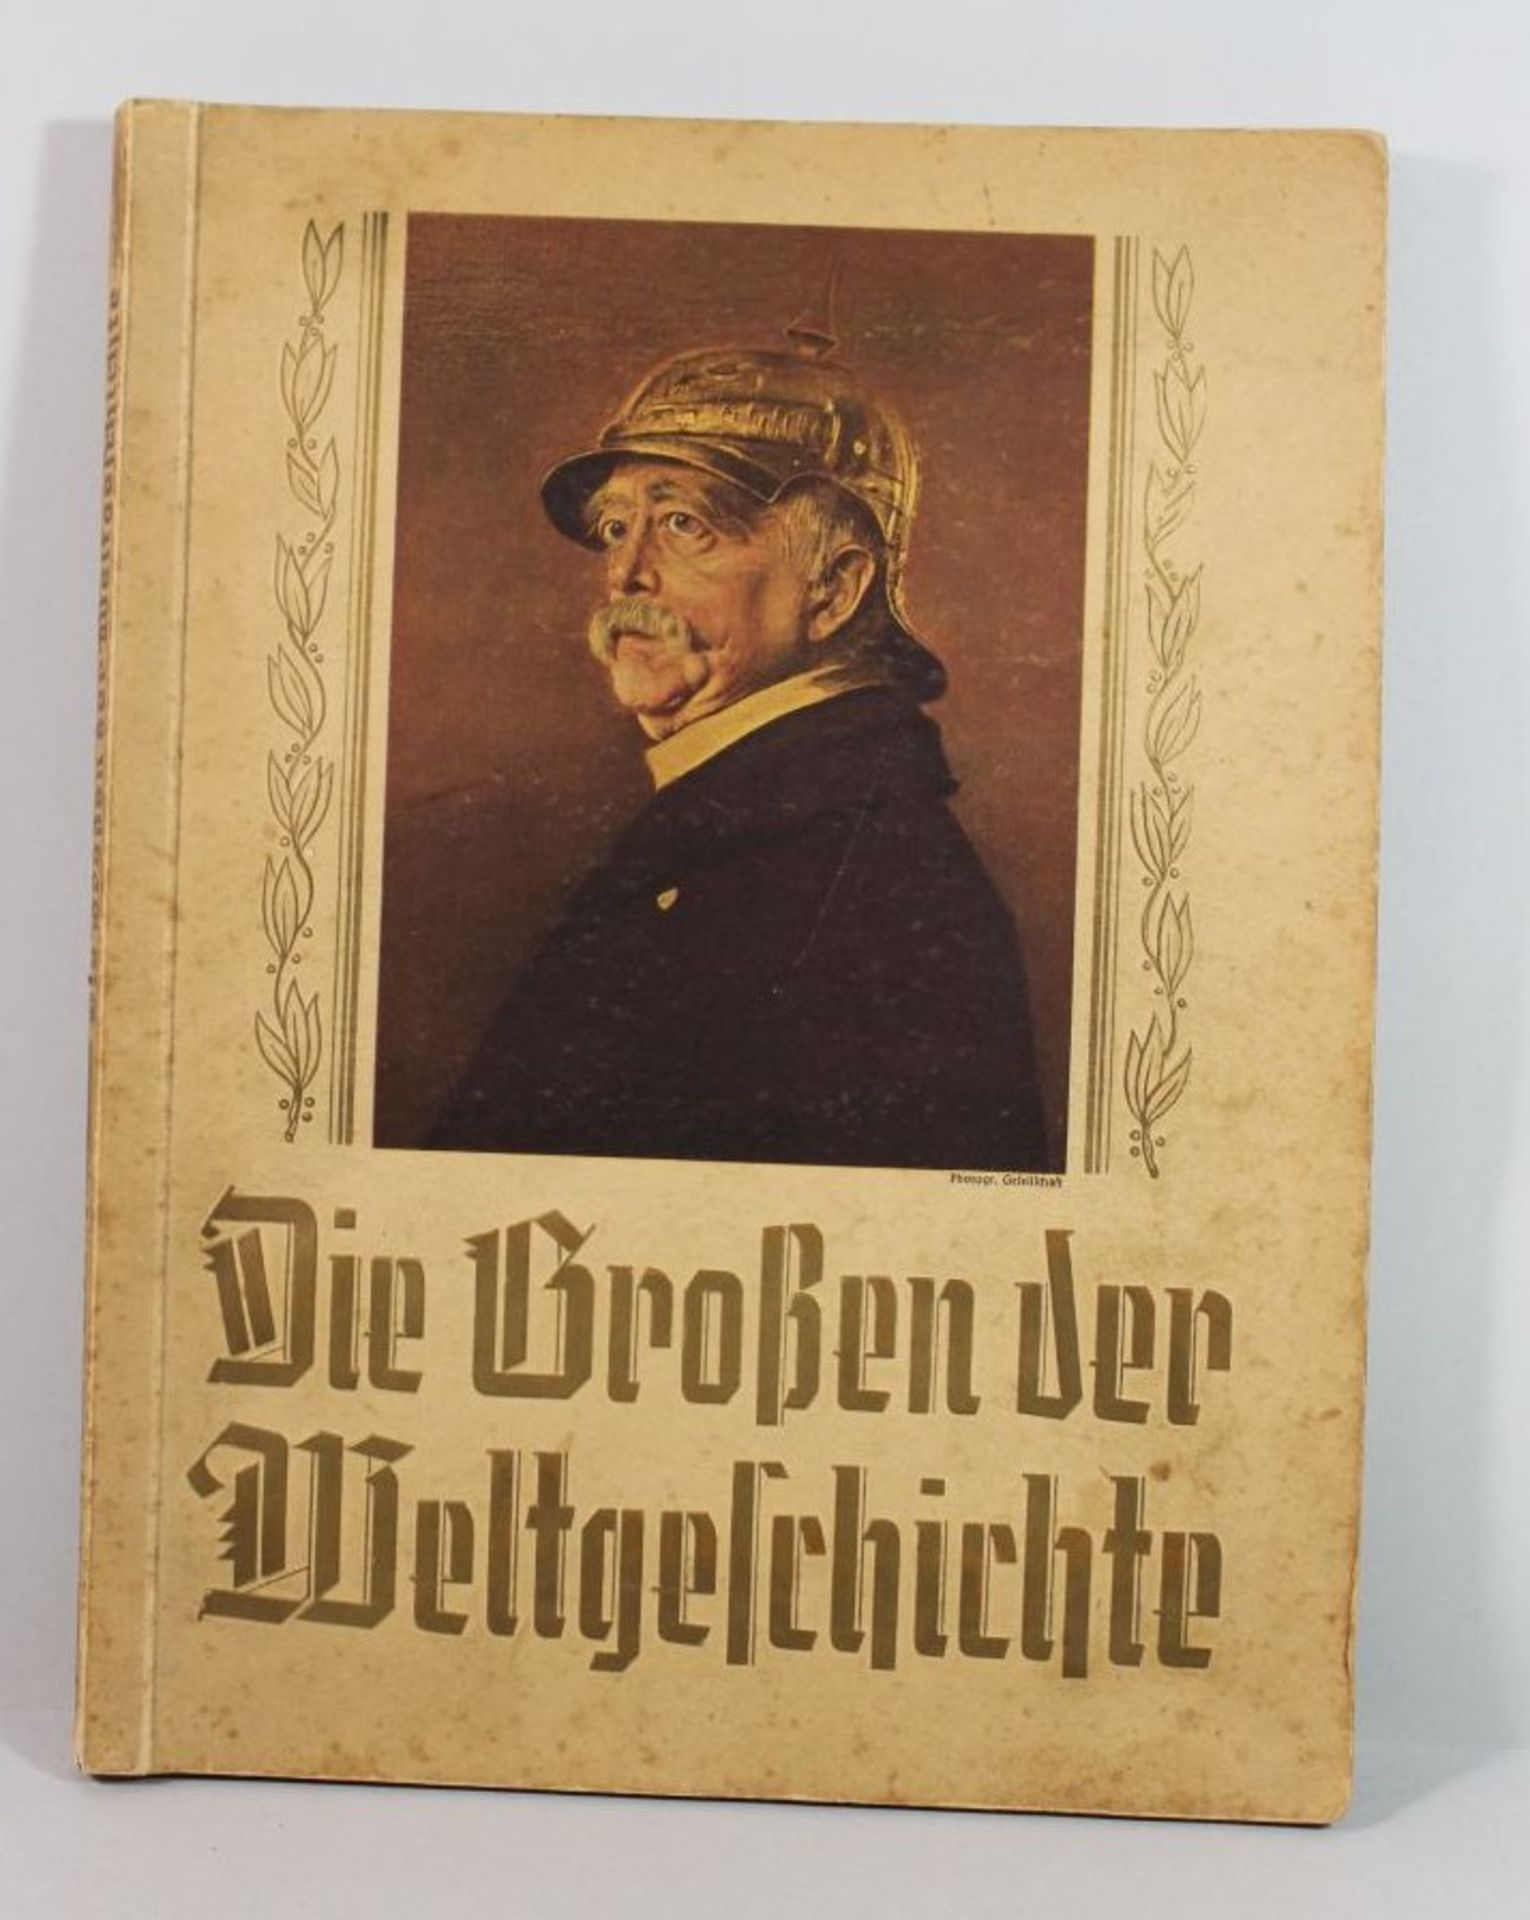 Sammelalbum "Die Großen der Weltgeschichte", 2 Bilder fehle